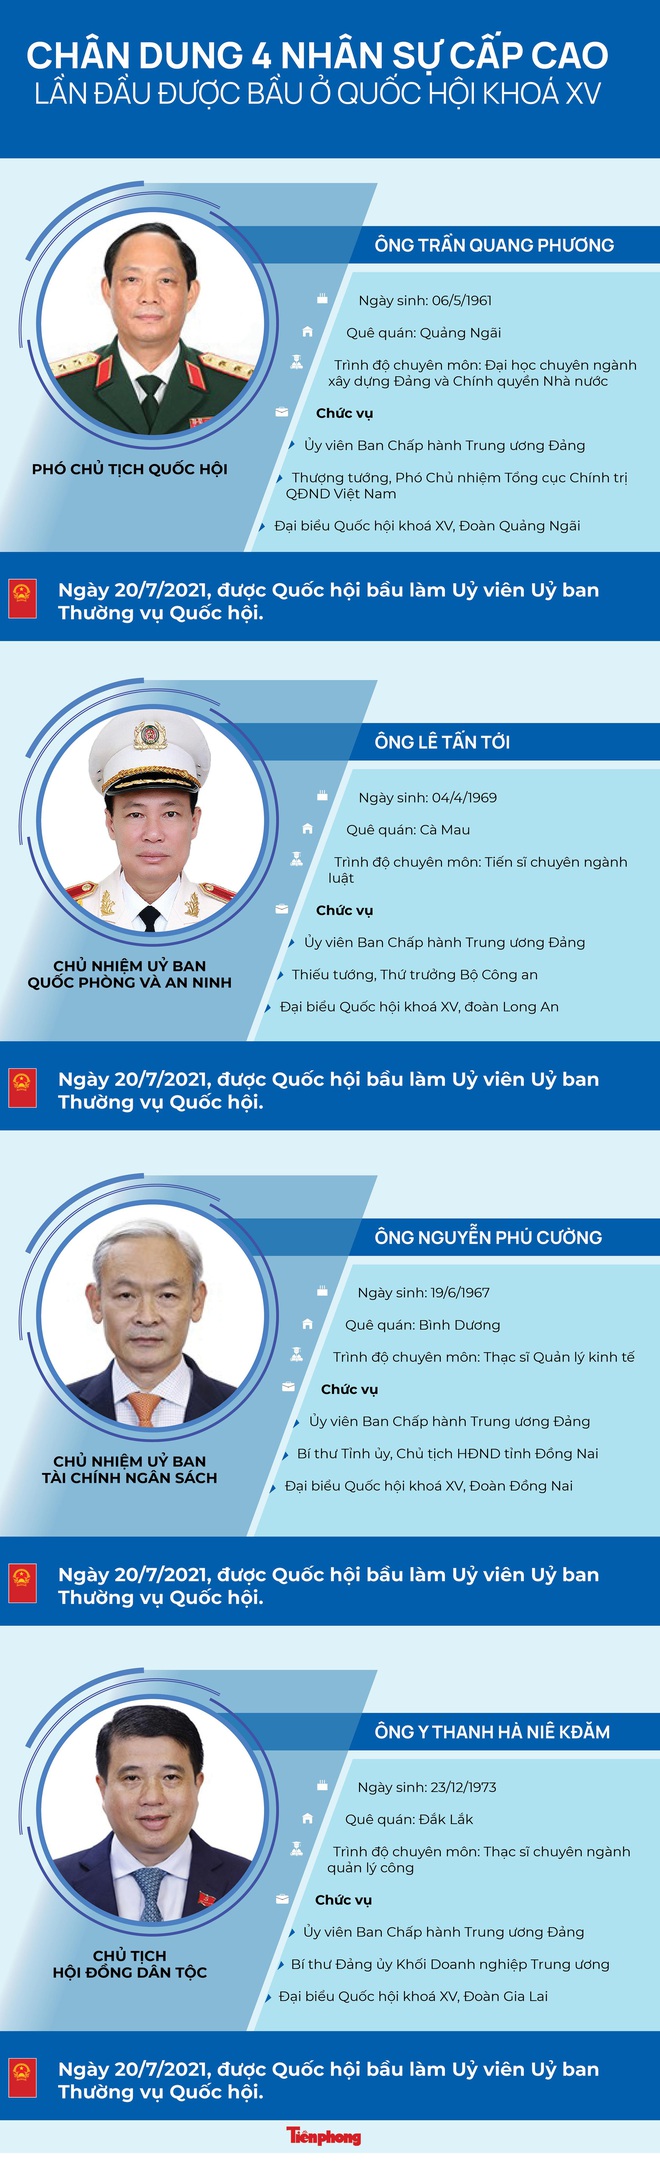 [Infographic] Bốn nhân sự cấp cao lần đầu được bầu vào bộ máy Quốc hội - Ảnh 1.